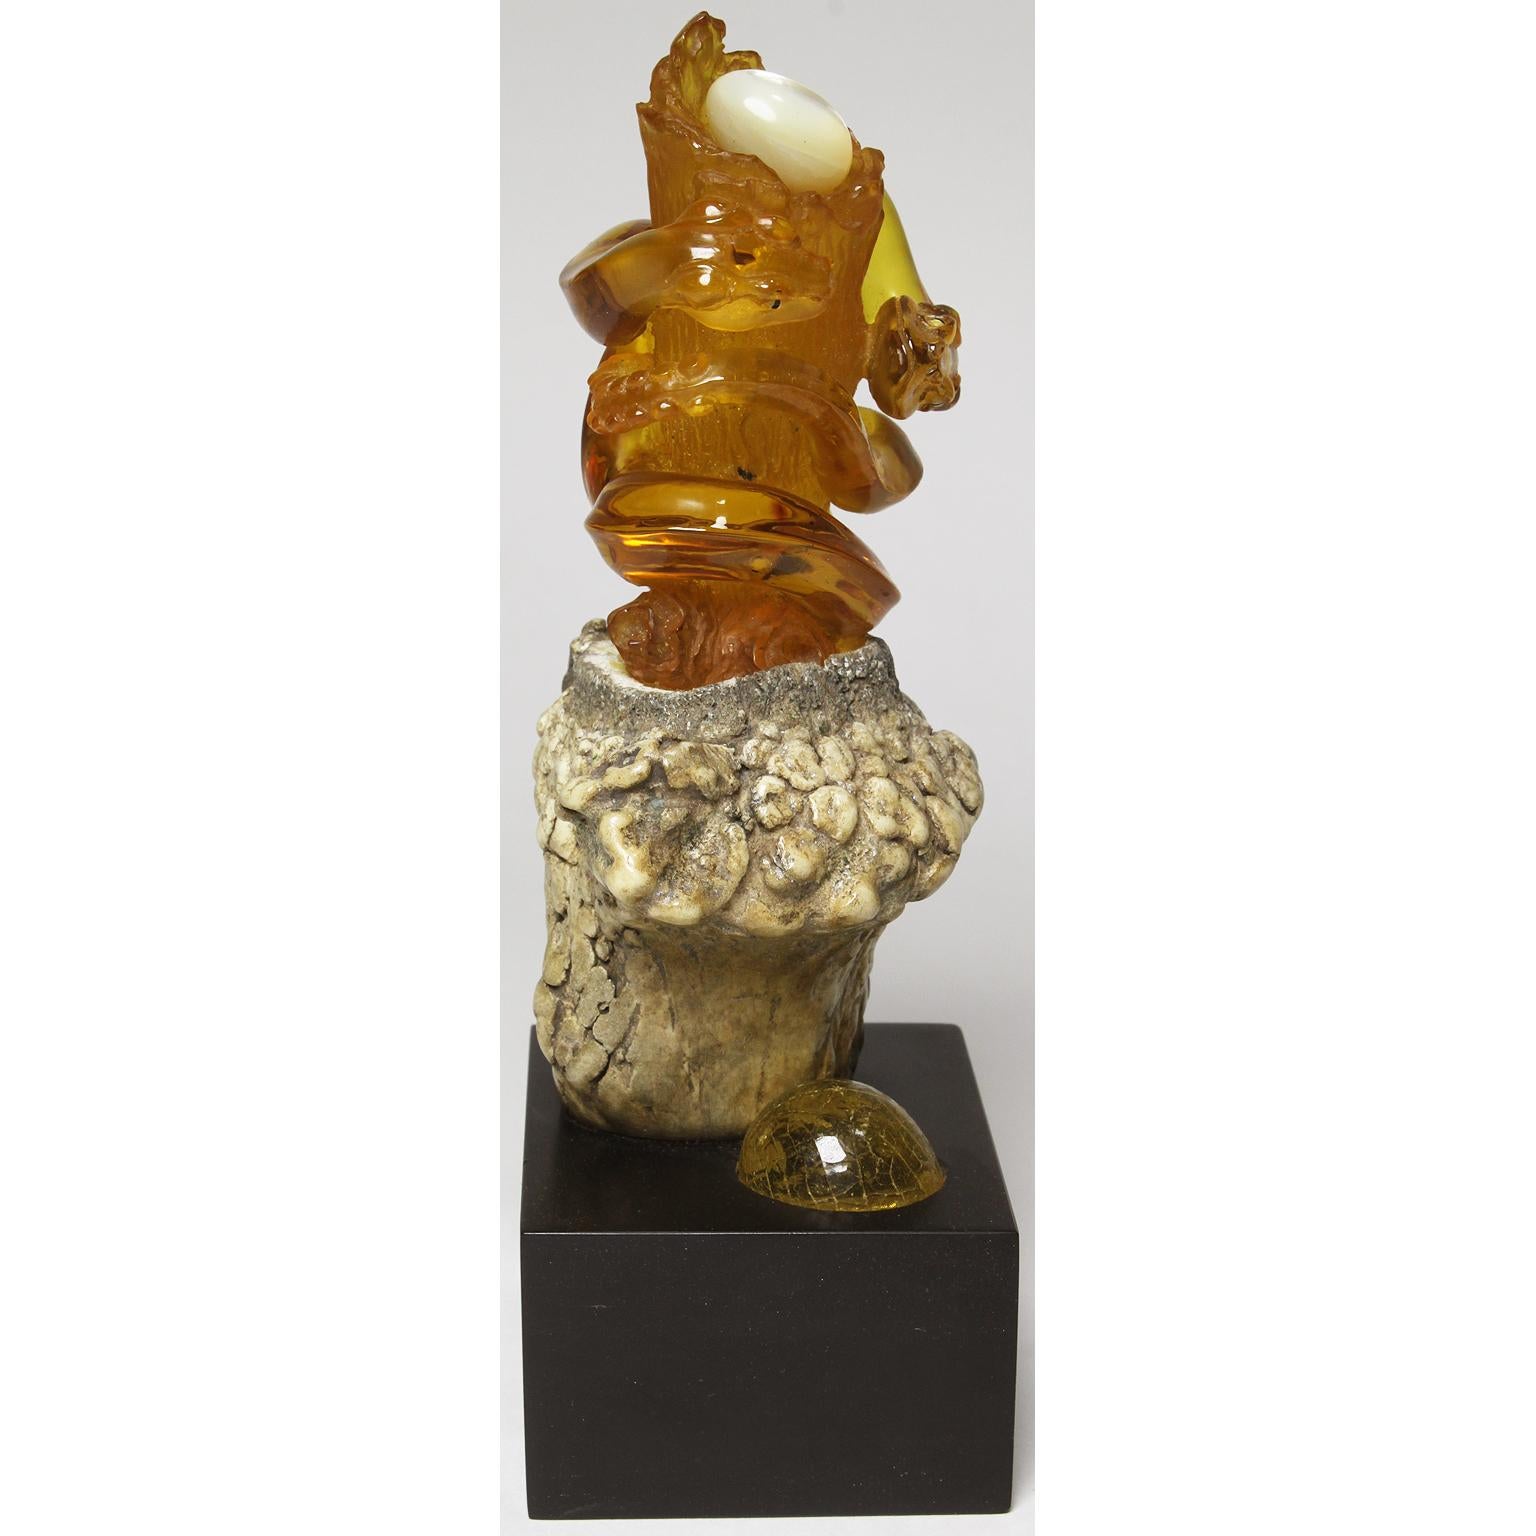 Un groupe de serpents et leur nid, finement sculpté en ambre naturel, dans un spécimen d'ambre de grande taille très clair provenant du Chiapas, au Mexique. La sculpture, représentant deux serpents entrelacés autour d'un tronc d'arbre, repose dans